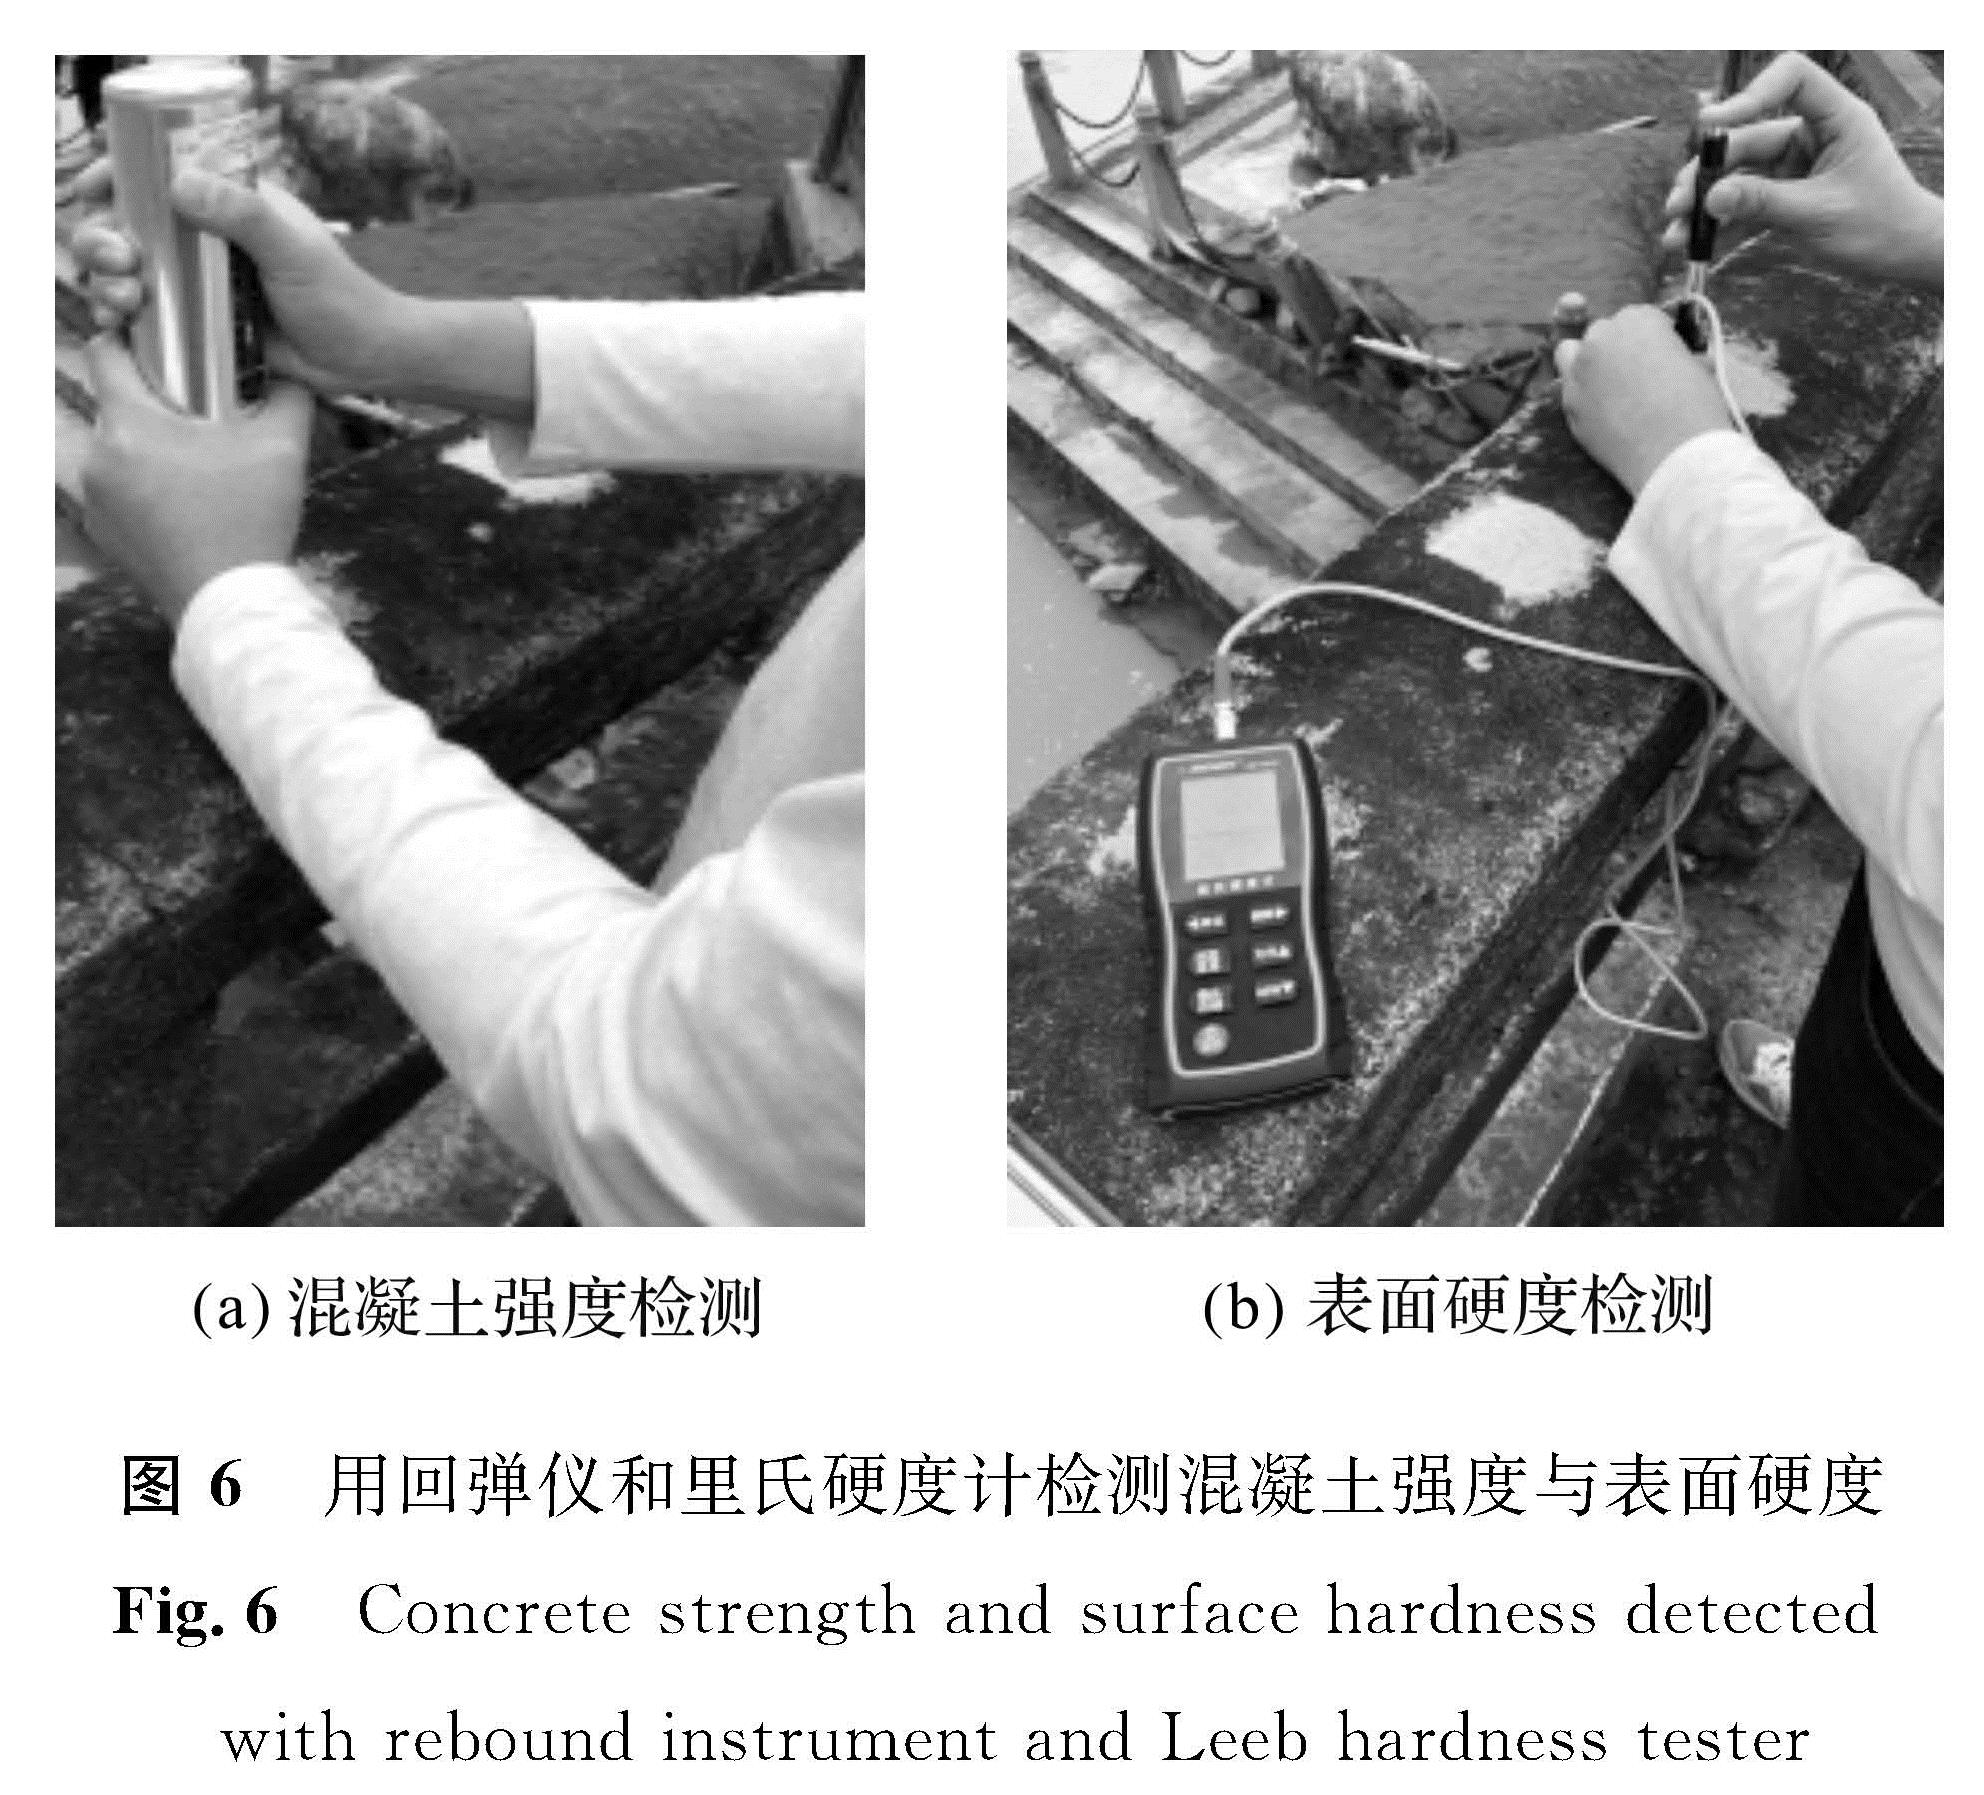 图6 用回弹仪和里氏硬度计检测混凝土强度与表面硬度<br/>Fig.6 Concrete strength and surface hardness detected  with rebound instrument and Leeb hardness tester